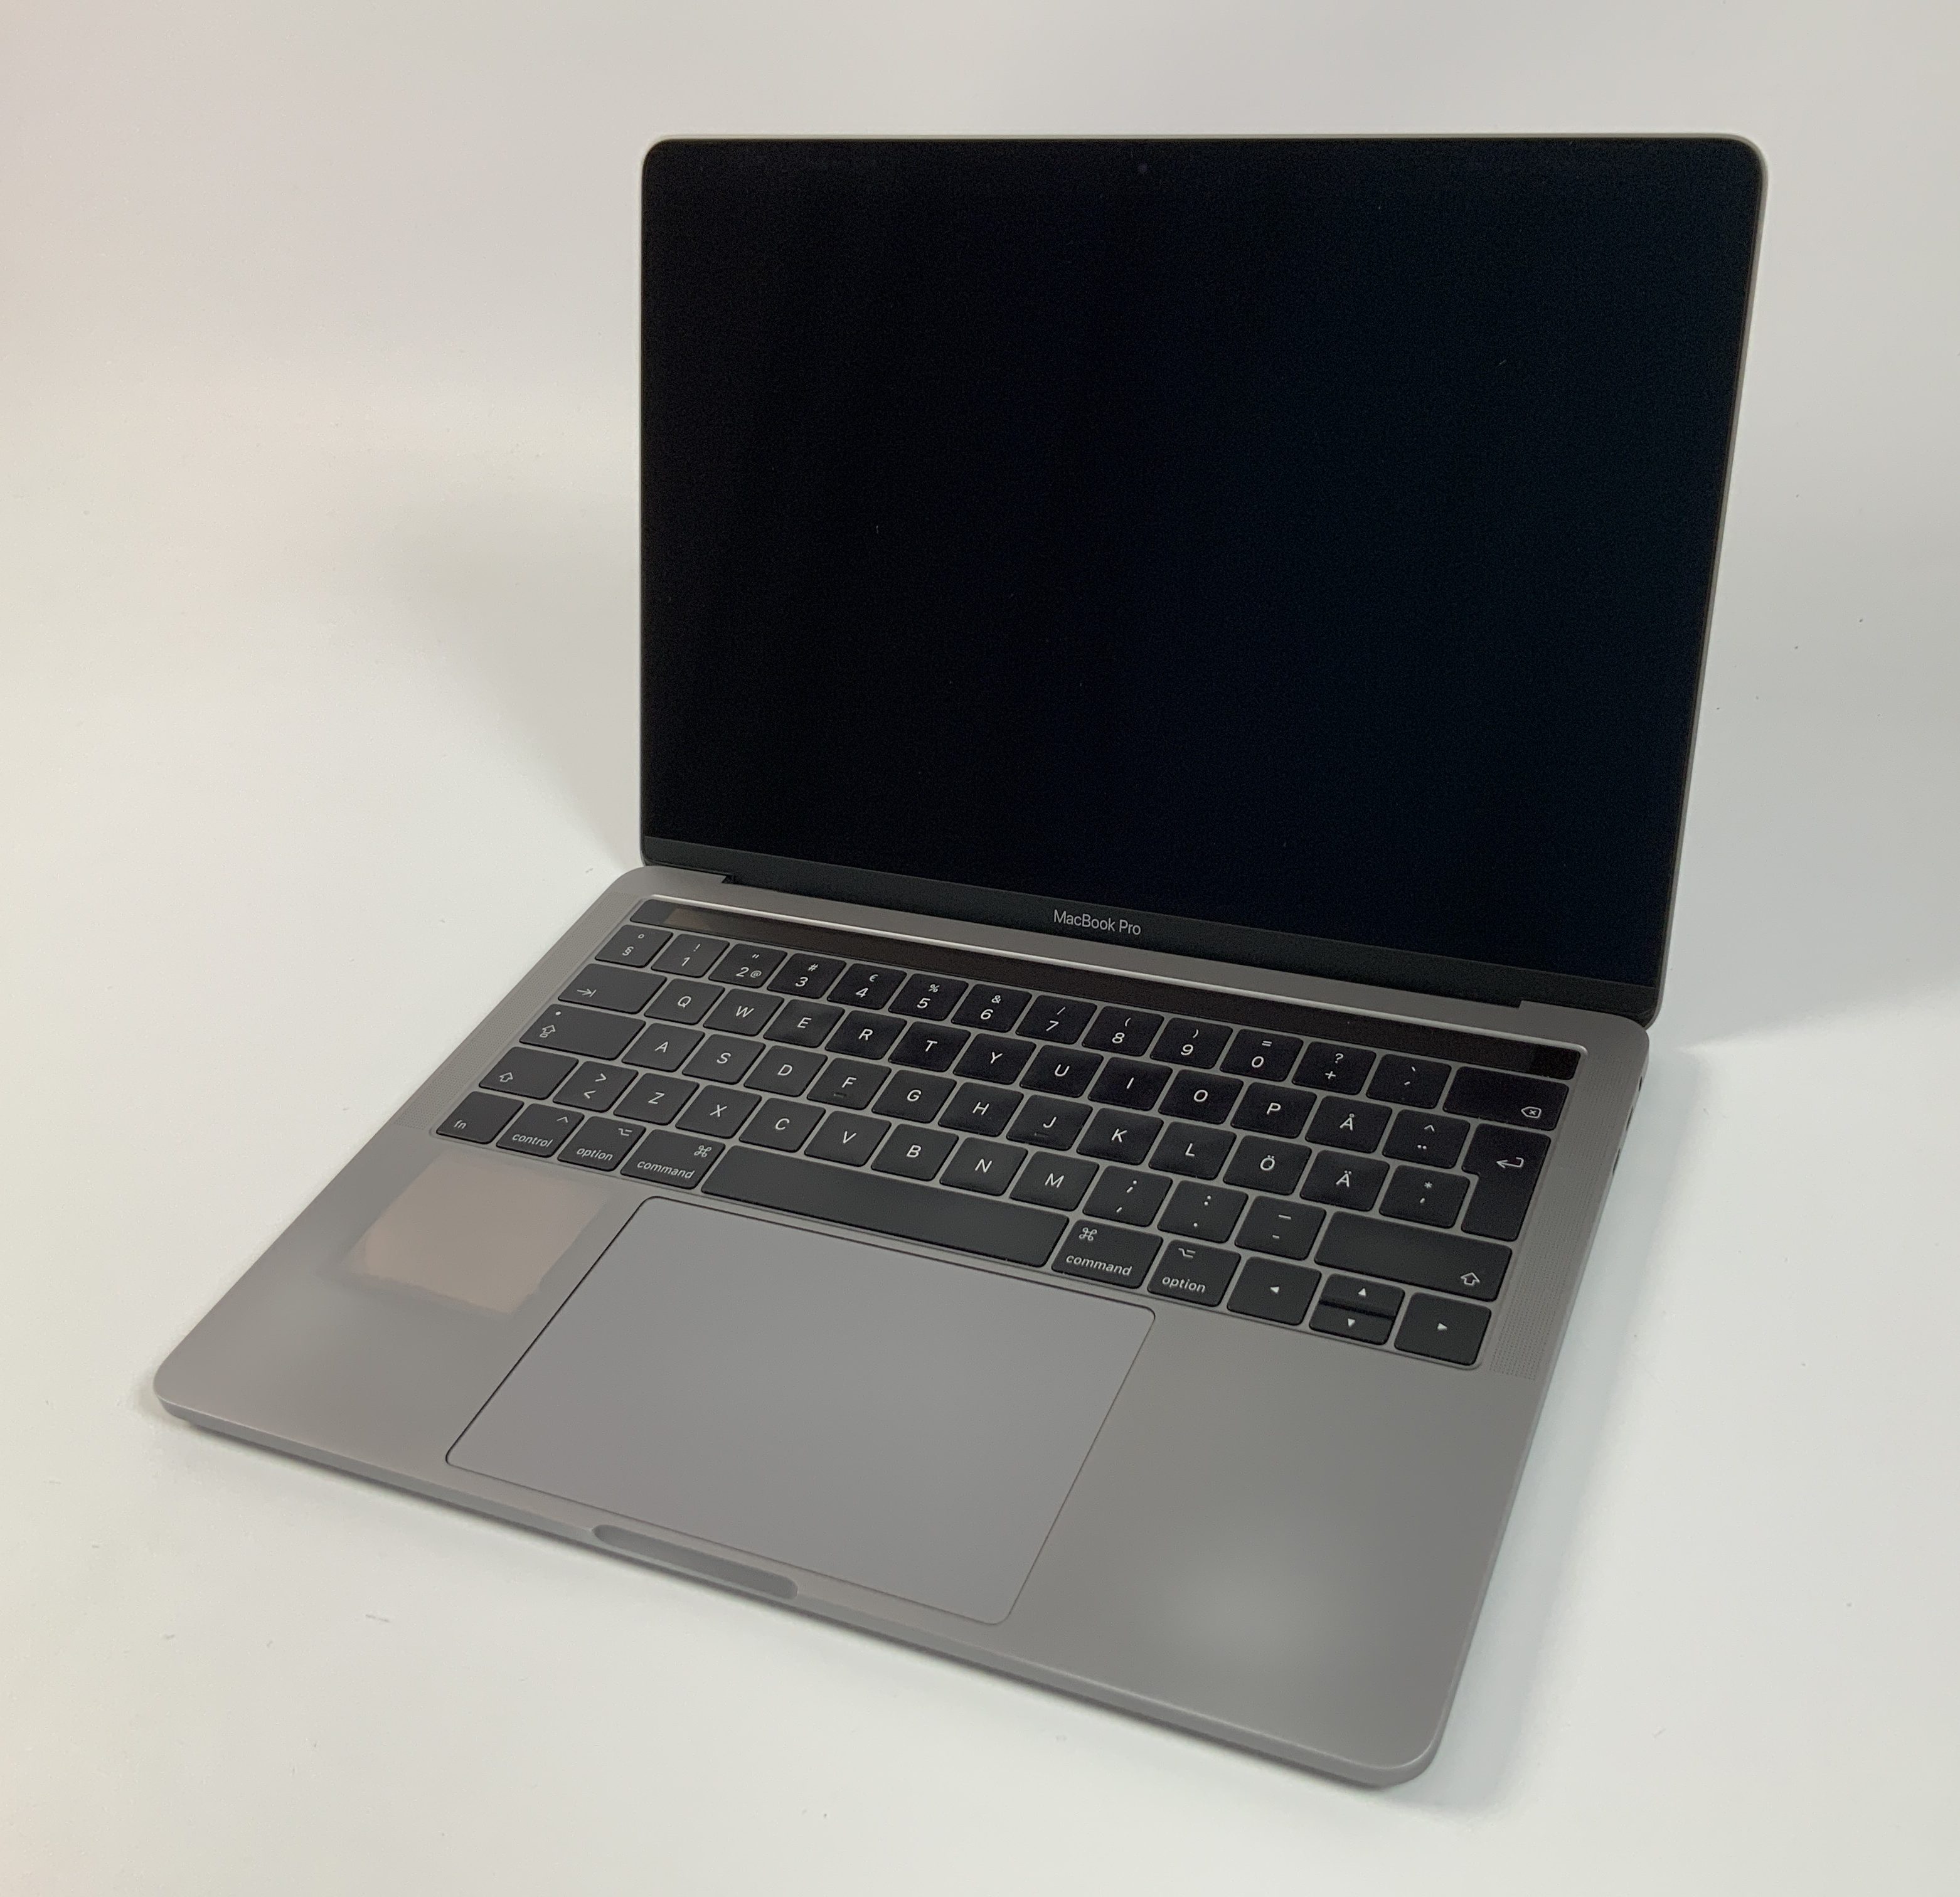 MacBook Pro 13" 4TBT Mid 2017 (Intel Core i5 3.1 GHz 8 GB RAM 512 GB SSD), Space Gray, Intel Core i5 3.1 GHz, 8 GB RAM, 512 GB SSD, image 1